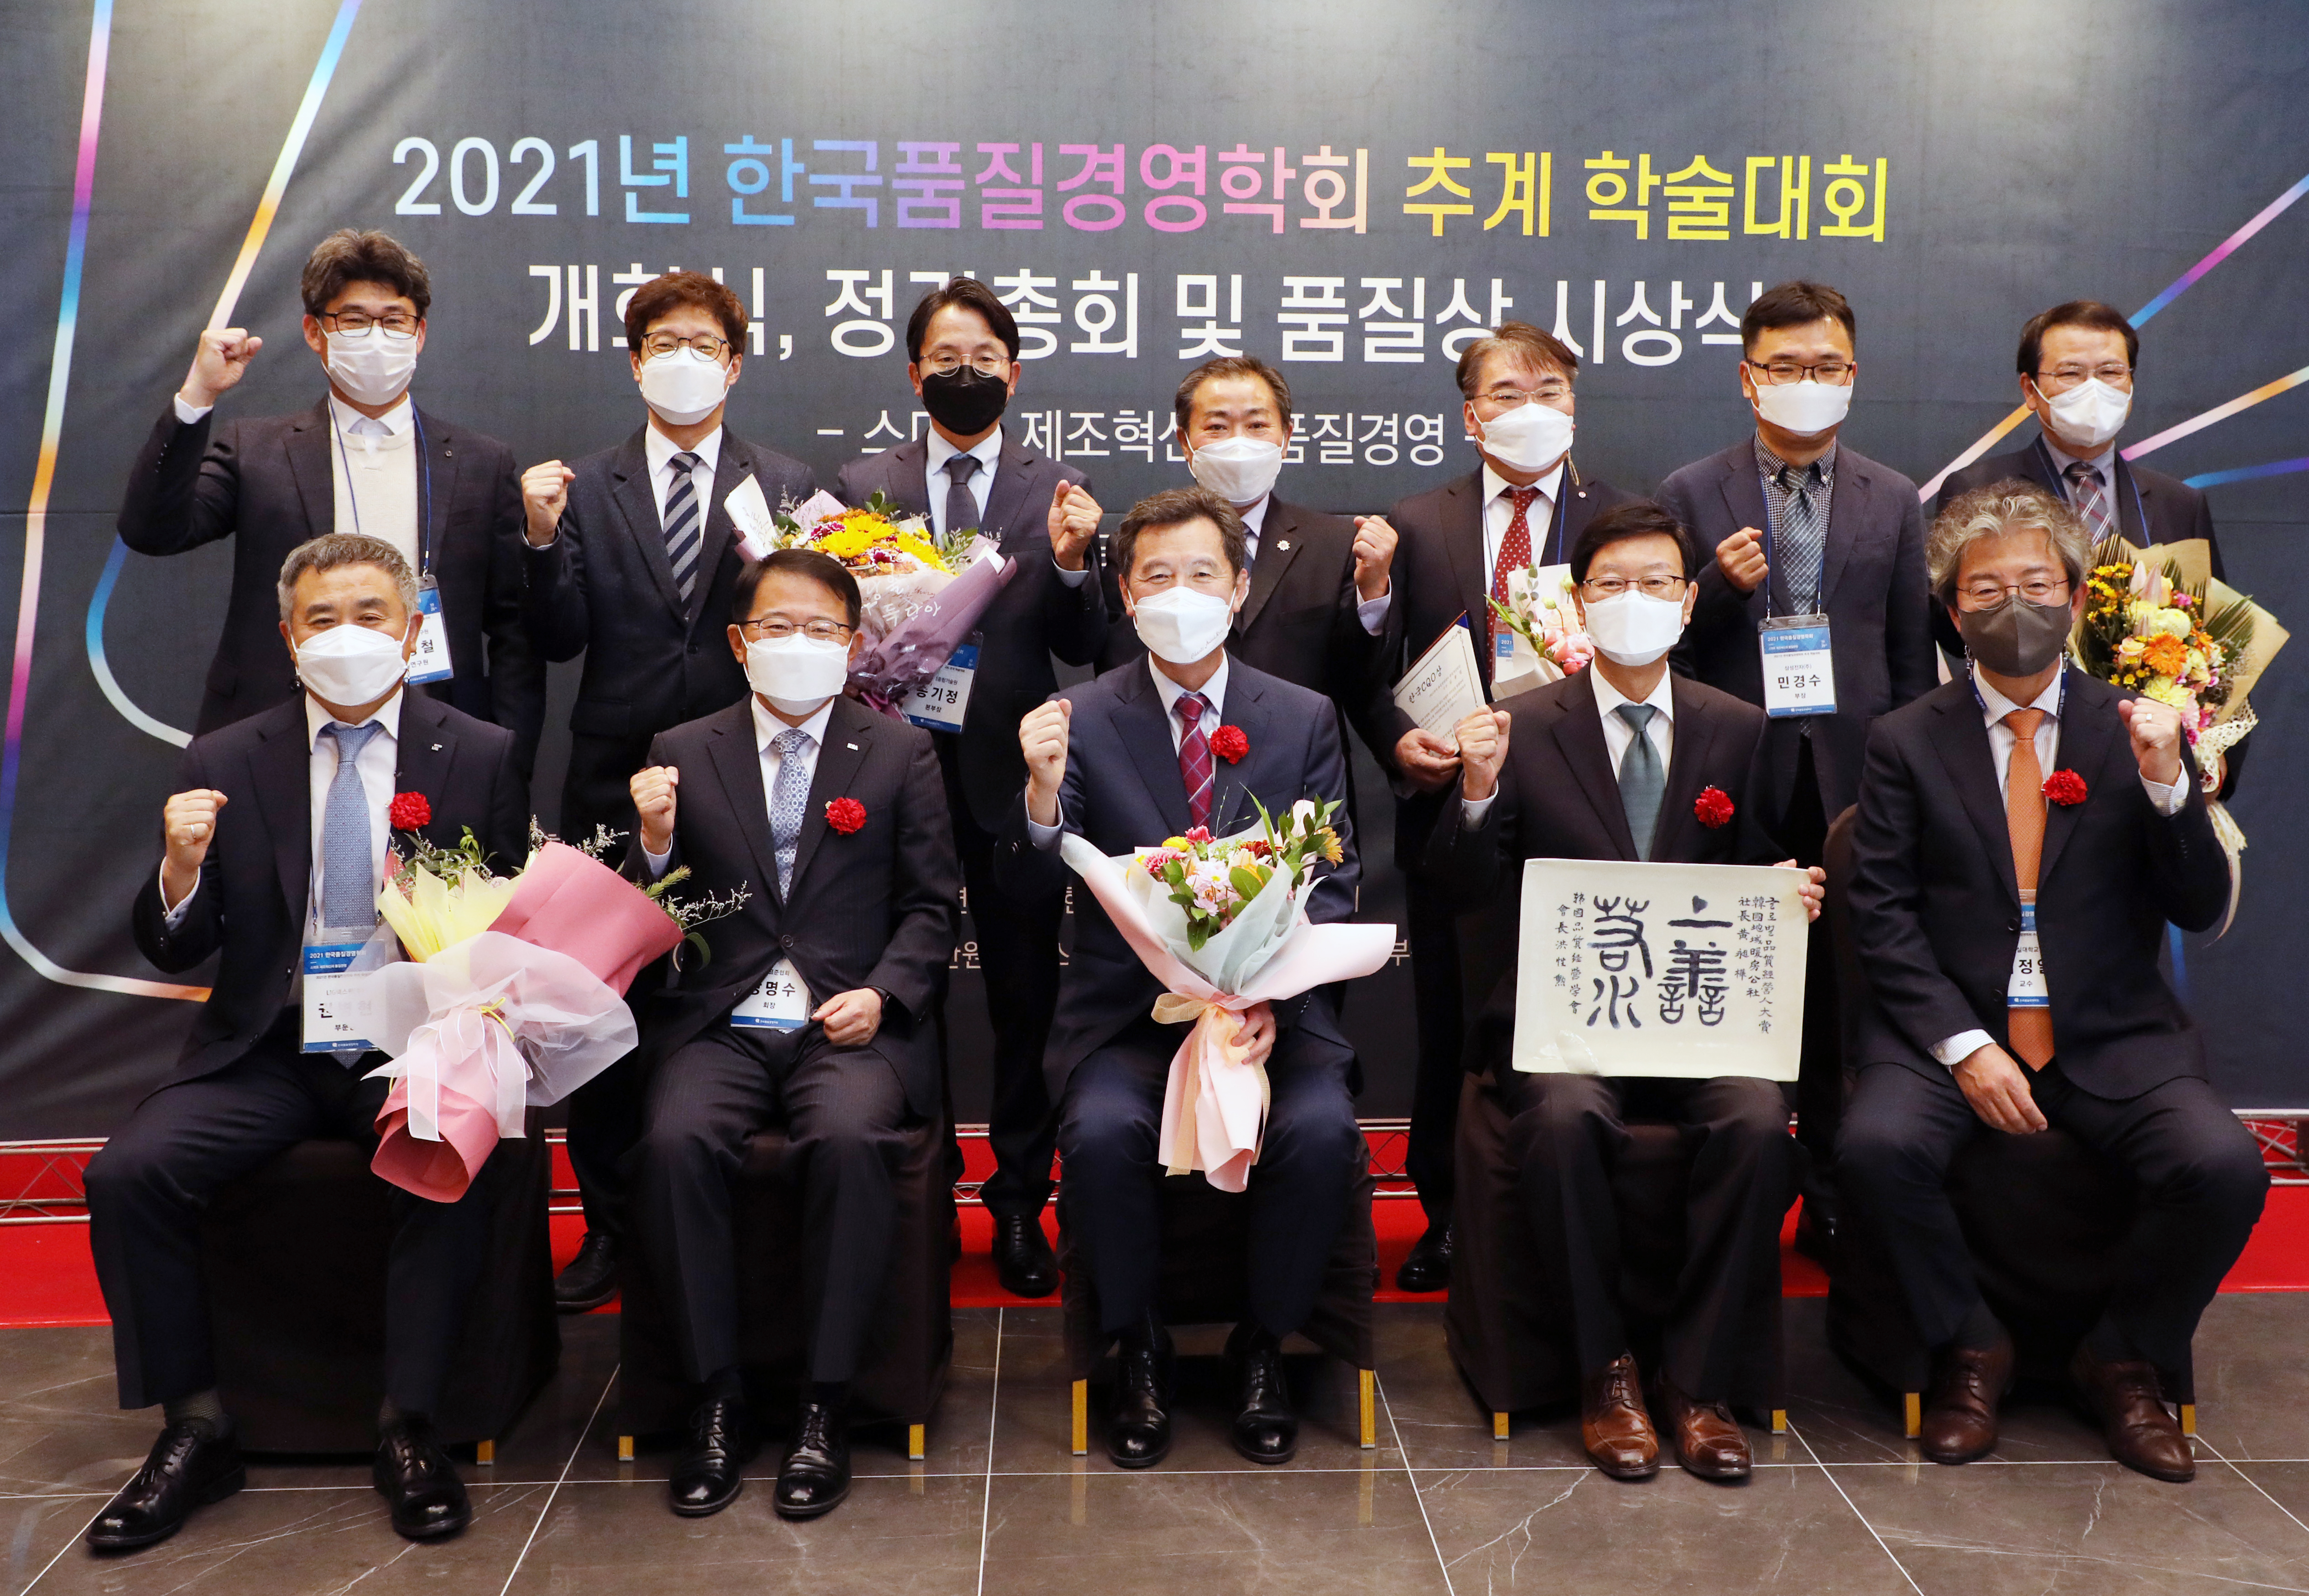 20211029-한국품질경영학회 글로벌 품질경영 대상 시상